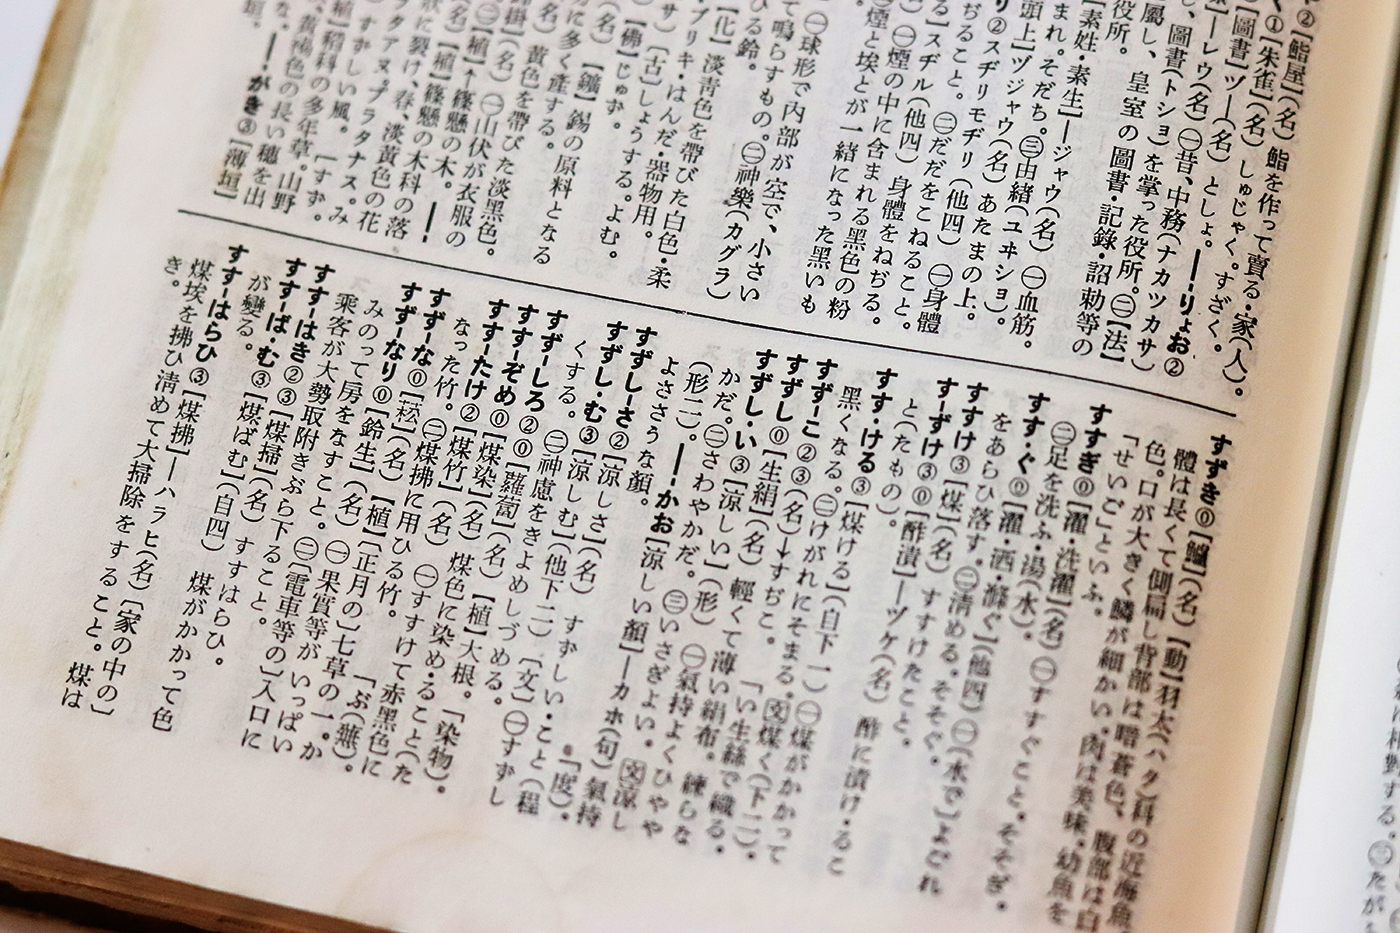 『明解国語辞典』（三省堂、1943年5月10日初版）の紙面。三省堂がのちにベントン彫刻機で新刻した5.5ポイント明朝活字をもちいている